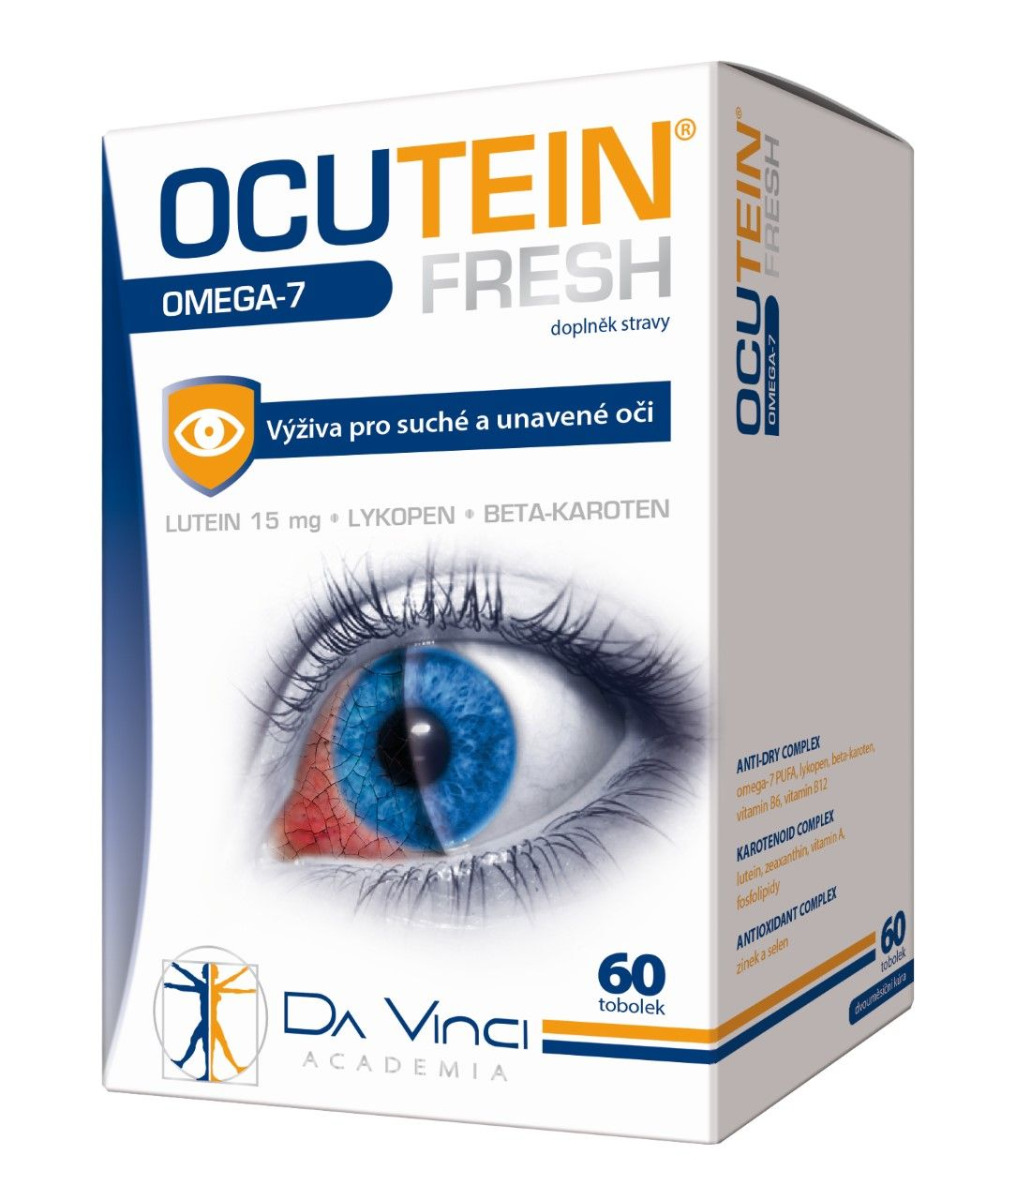 Ocutein Fresh Omega-7 60 tobolek Ocutein